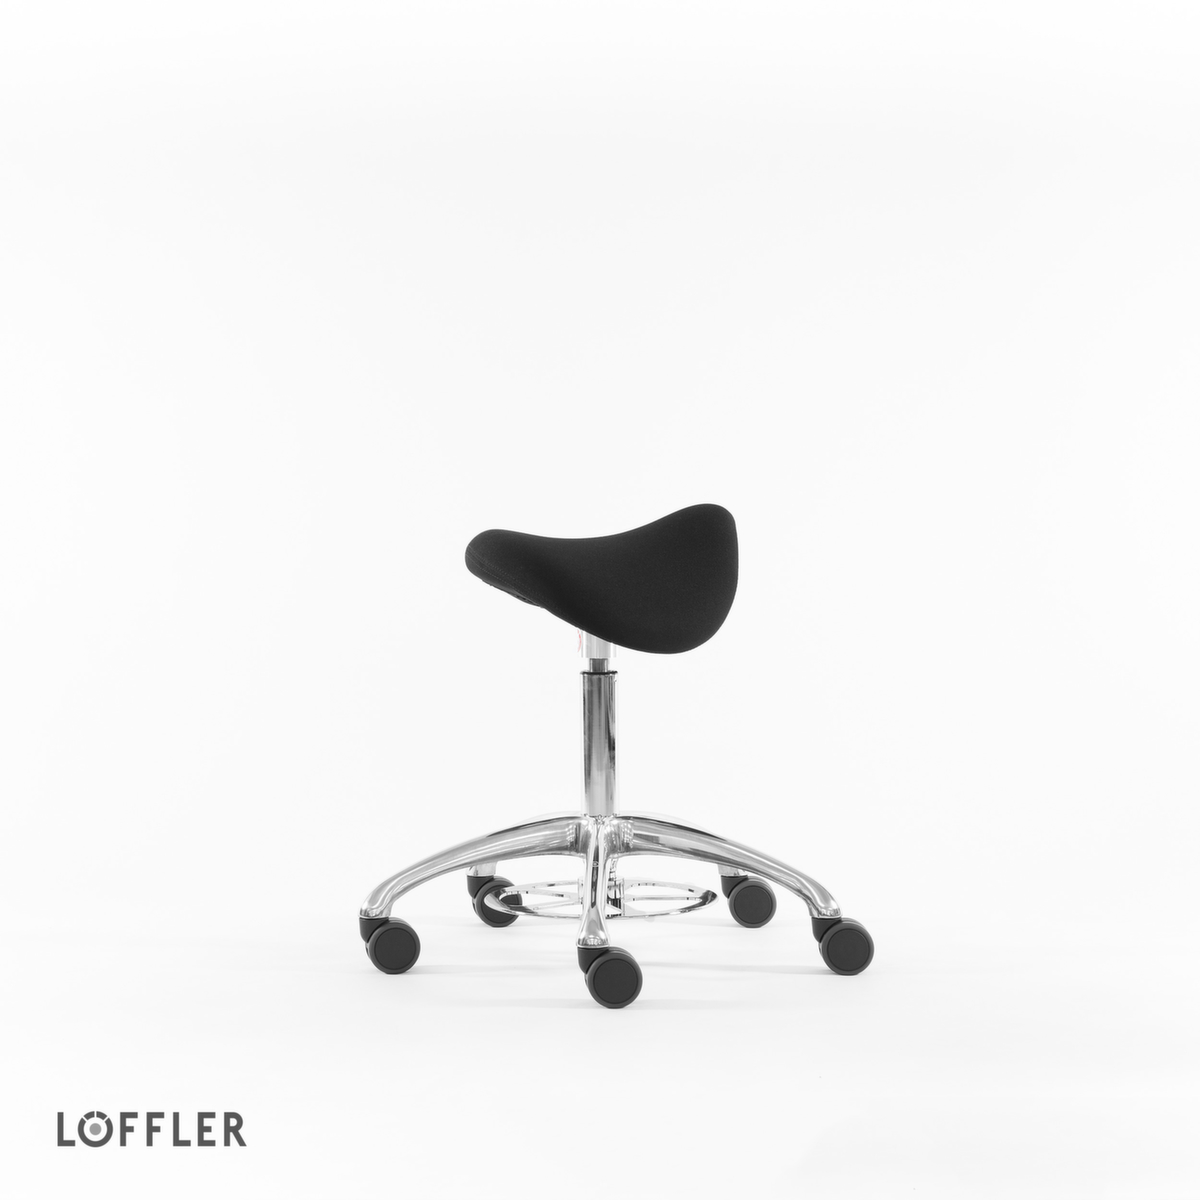 Löffler Sattelsitzhocker Sedlo mit Fußauslösung, Sitz schwarz, Rollen Standard 2 ZOOM